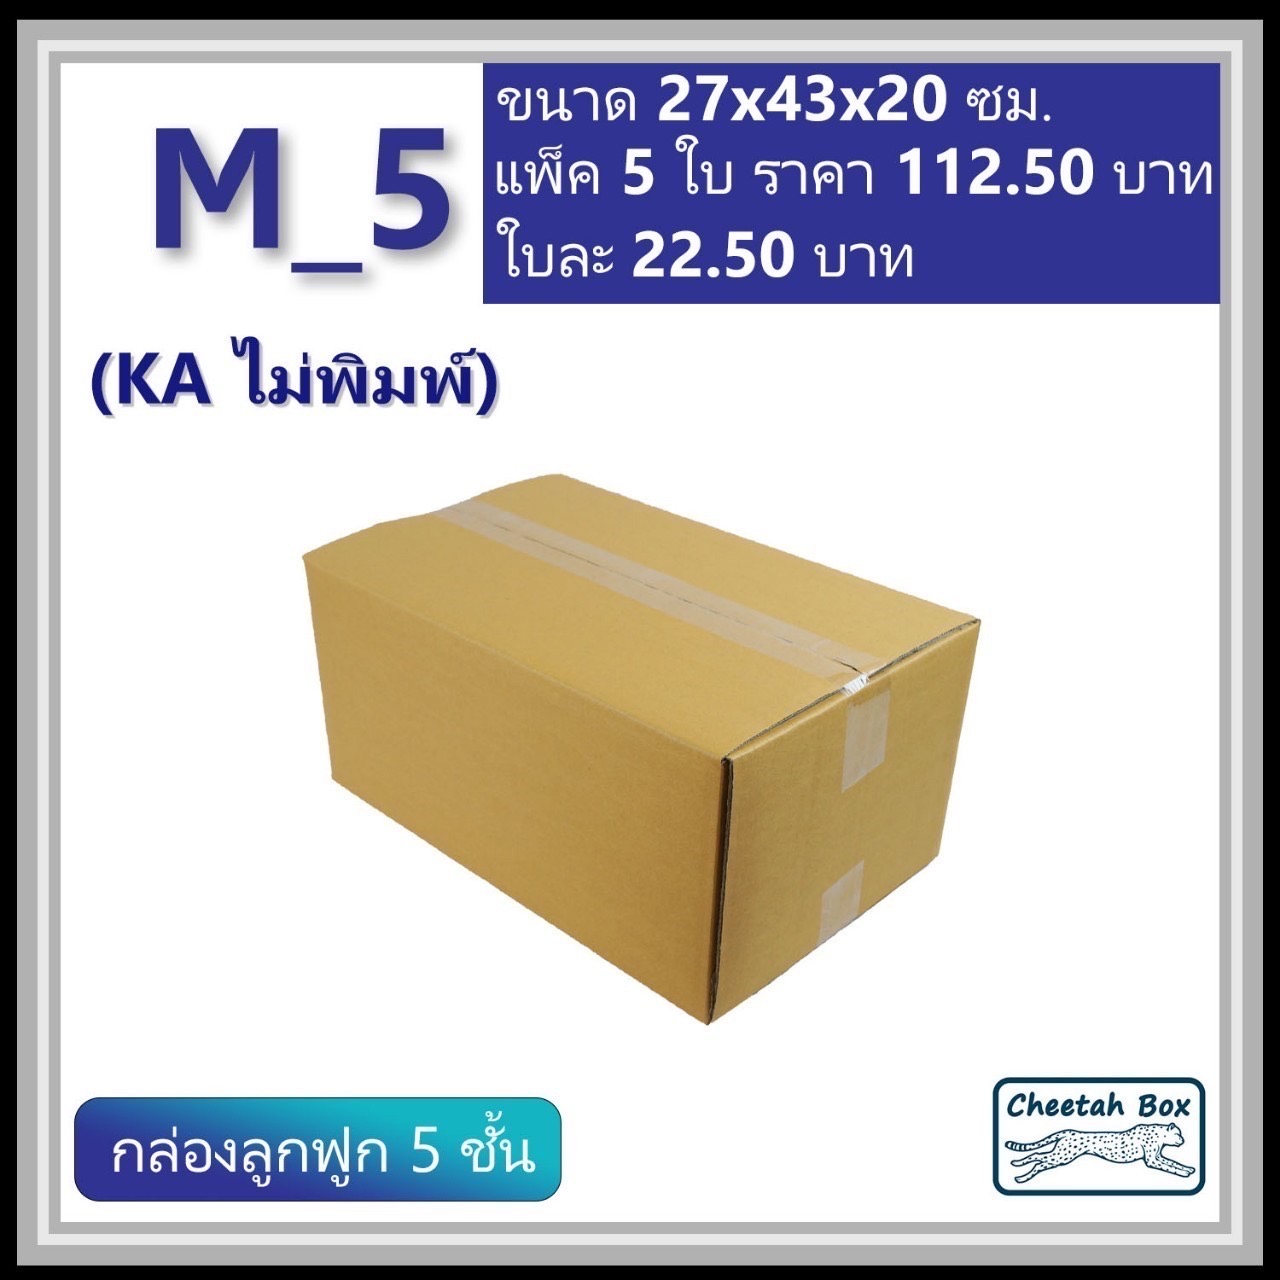 กล่องพัสดุ 5 ชั้น M_5 (KA125) ไม่พิมพ์ (Post Box) ลูกฟูก 5 ชั้น ขนาด 27W x 43L x 20H cm.